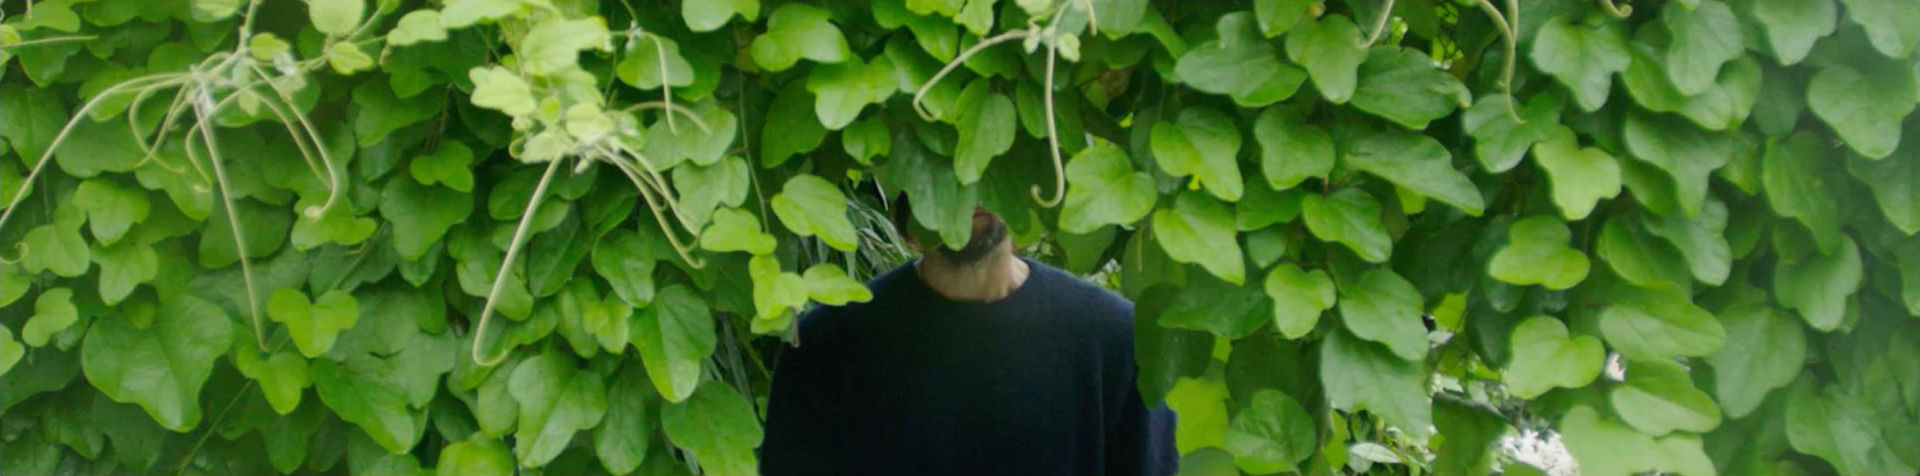 푸른 잎이 무성한 나무 뒤에 서 있는 데이비드 드 로스차일드.